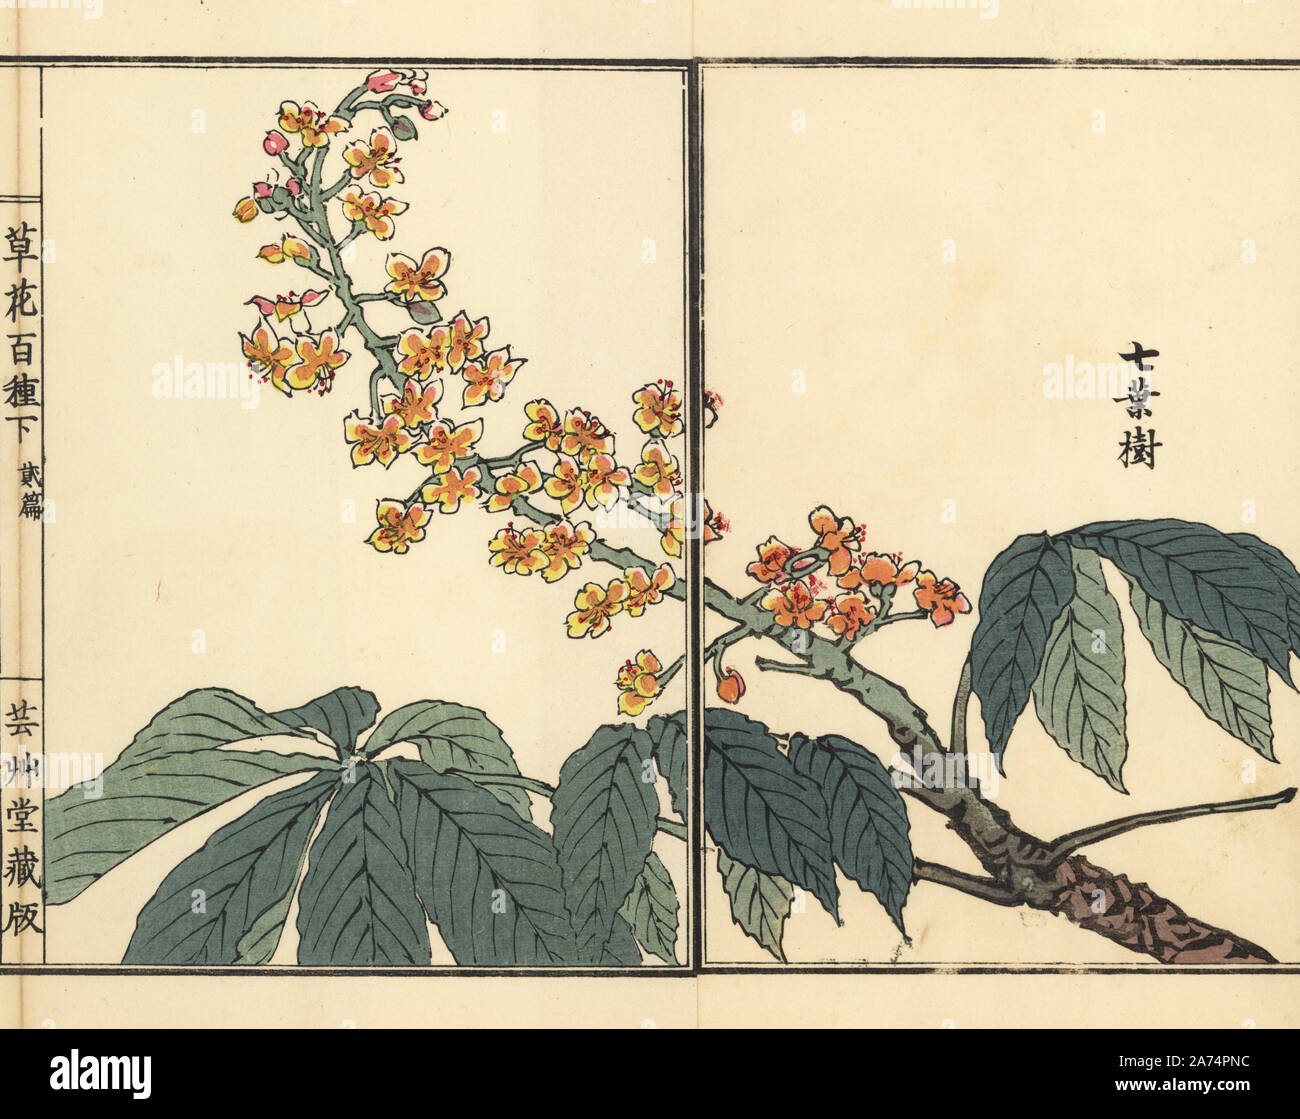 Tochinoki or Japanese horse chestnut, Aesculus turbinata. Handcoloured woodblock print by Kono Bairei from Kusa Bana Hyakushu (One Hundred Varieties of Flowers), Tokyo, Yamada, 1901. Stock Photo